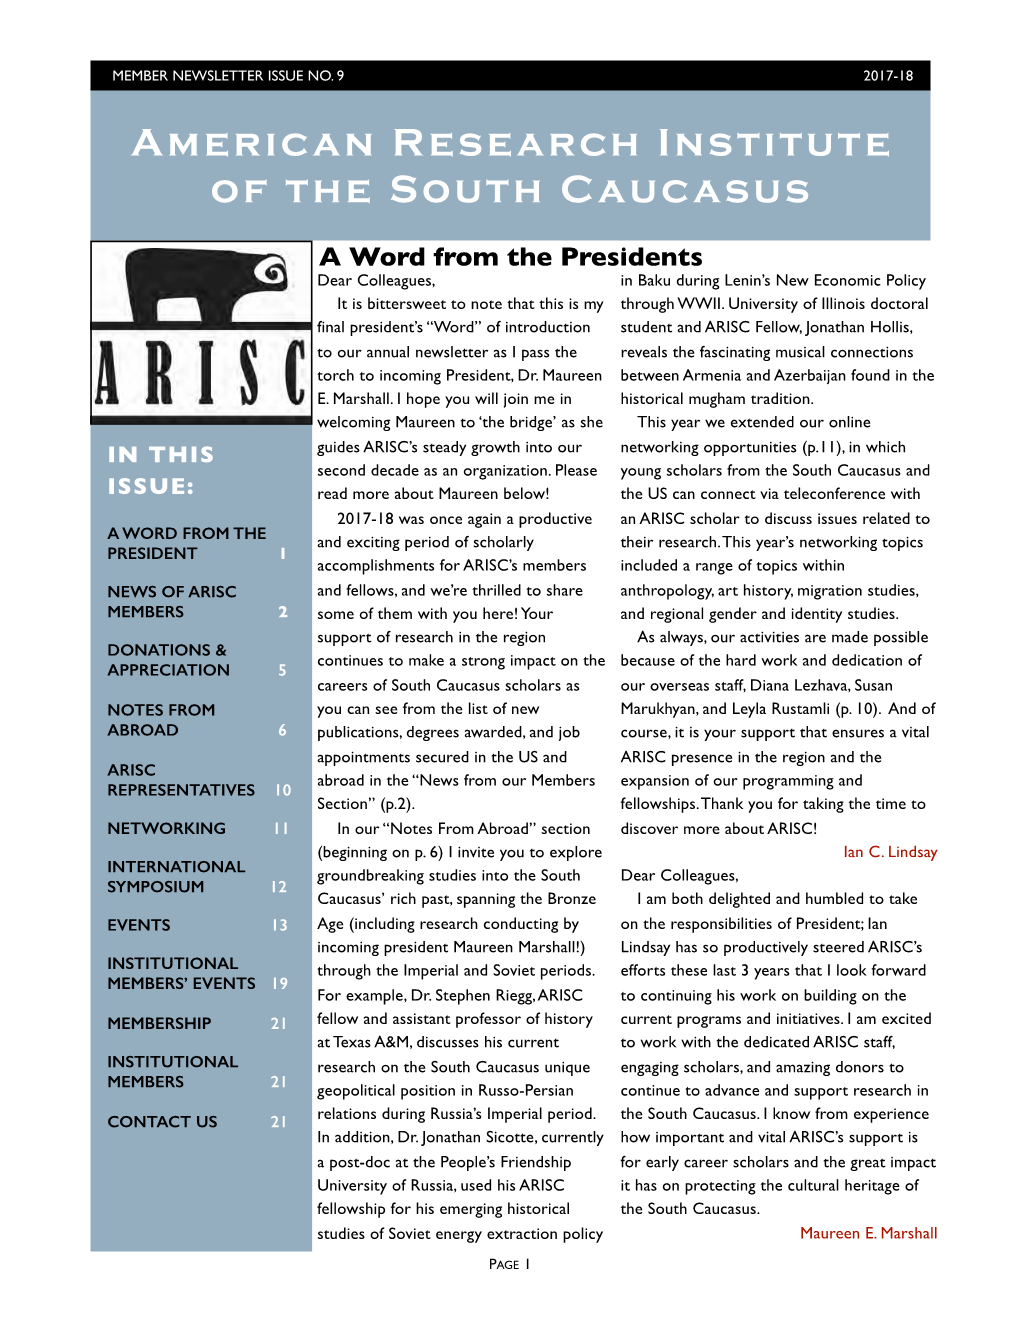 ARISC Newsletter No 9